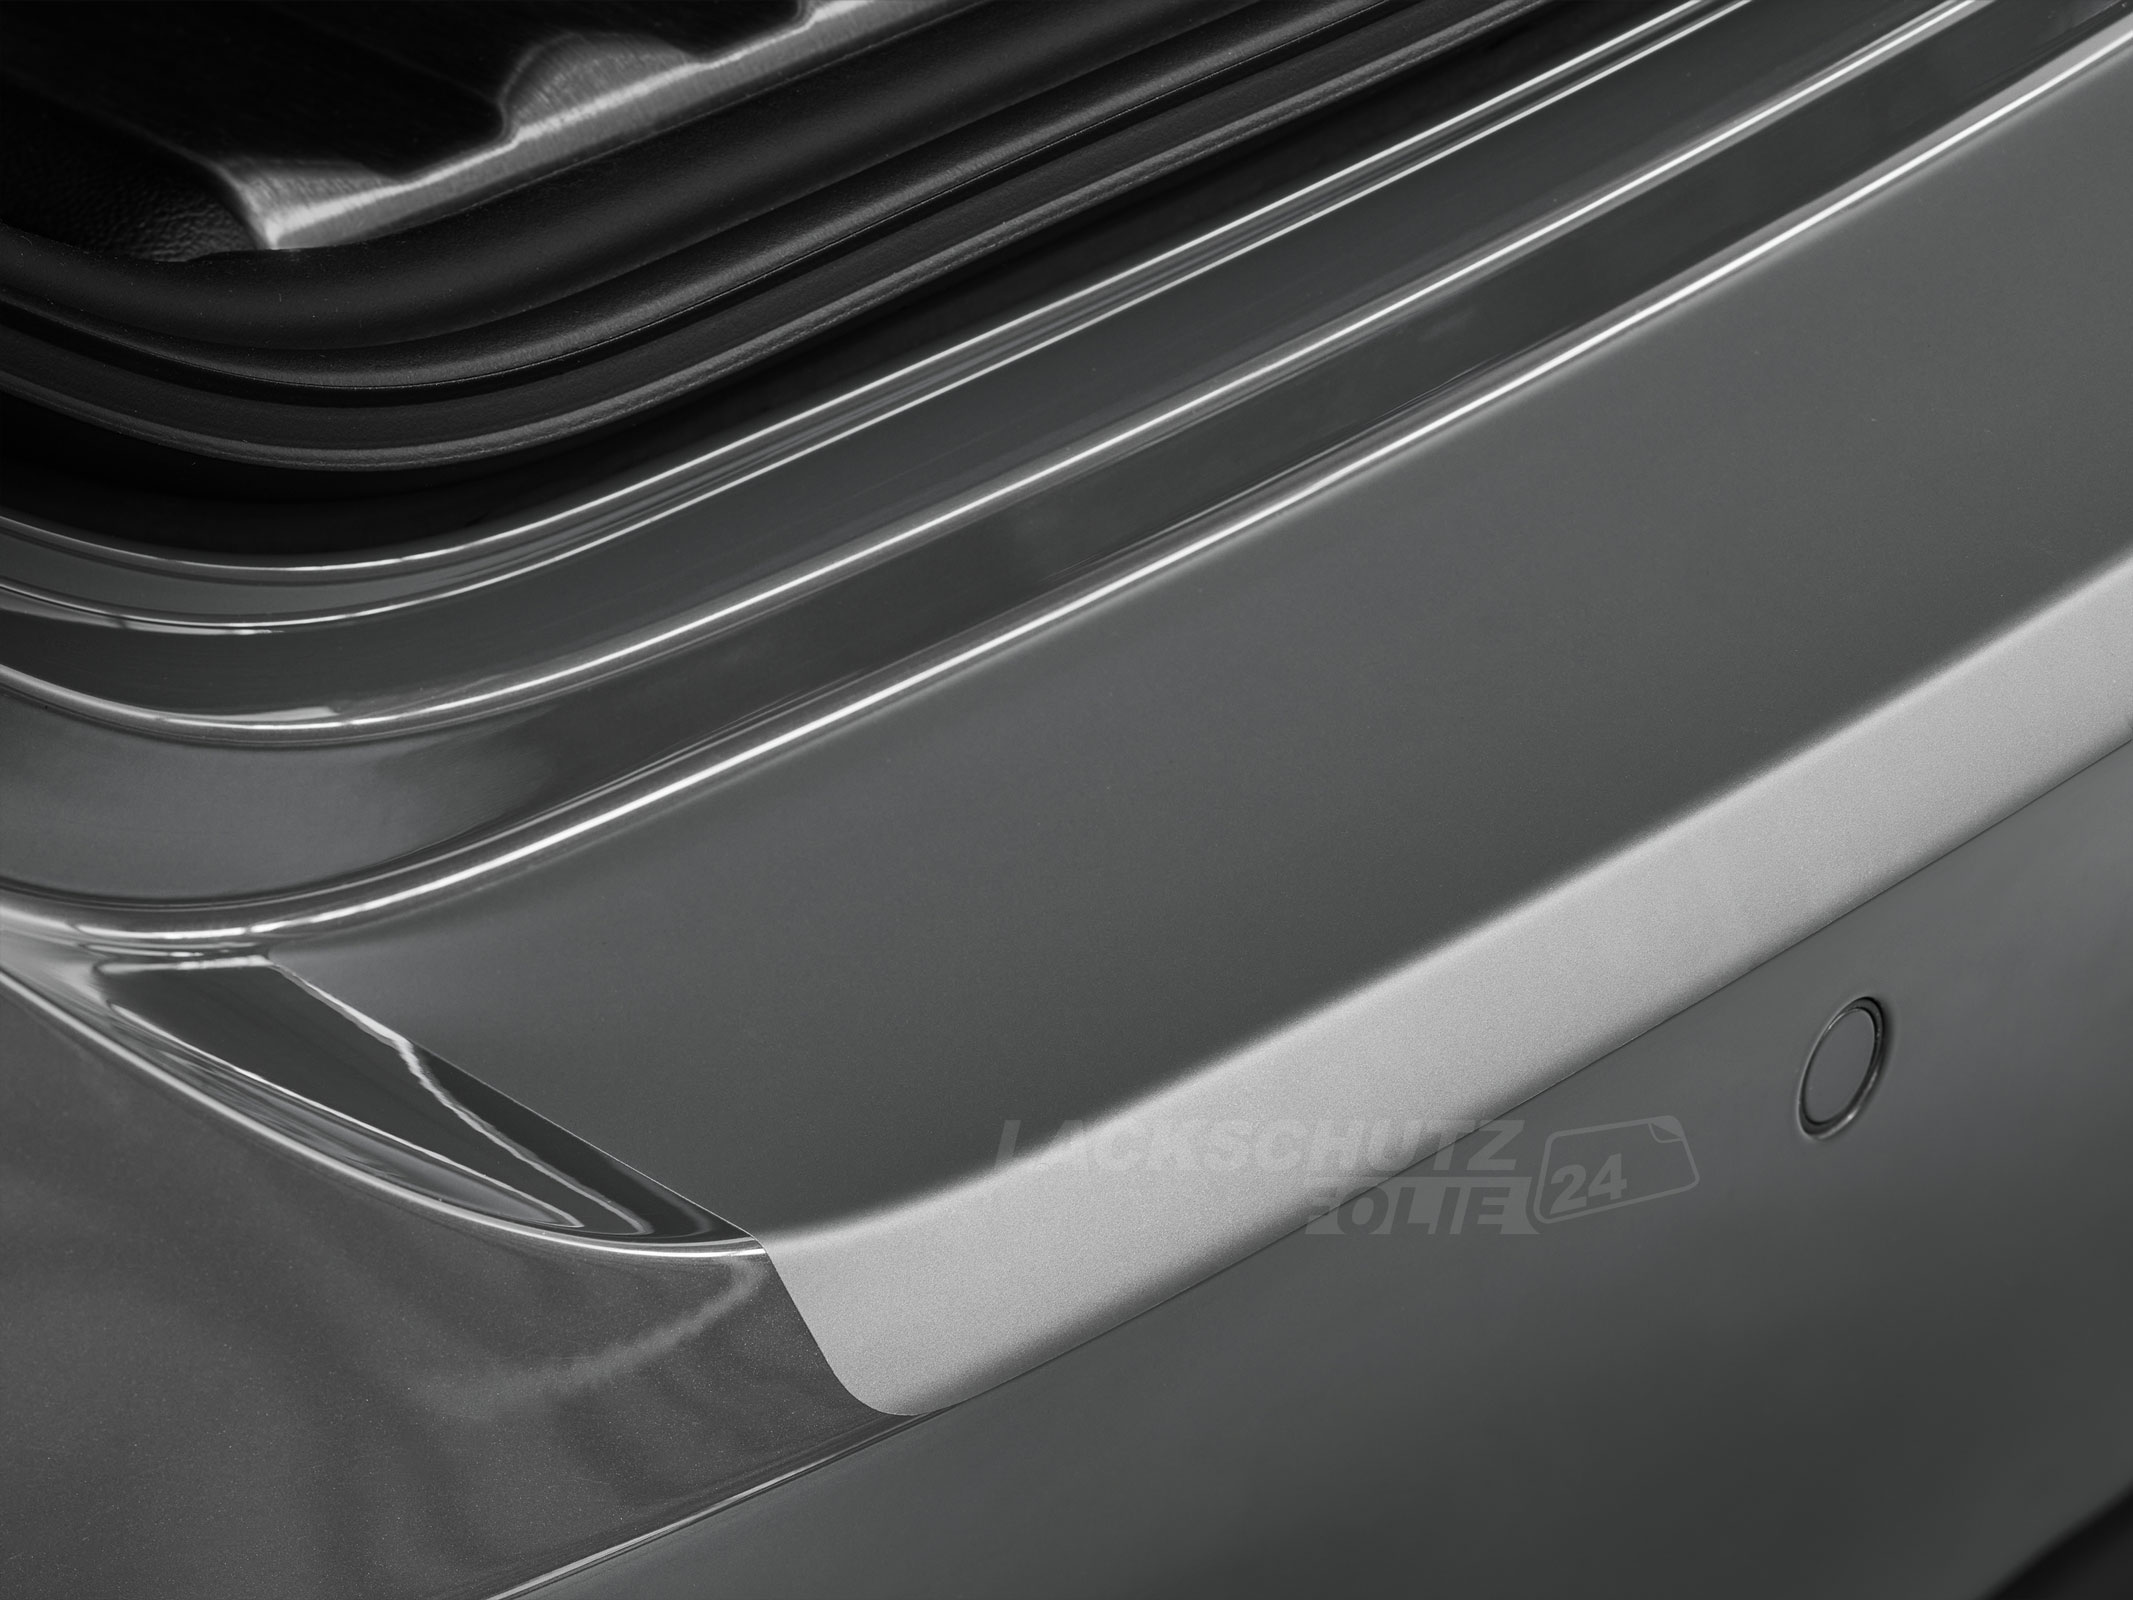 Ladekantenschutzfolie - Transparent Glatt MATT 110 µm stark  für Mazda 5 (II) Typ CW, ab BJ 10/2010